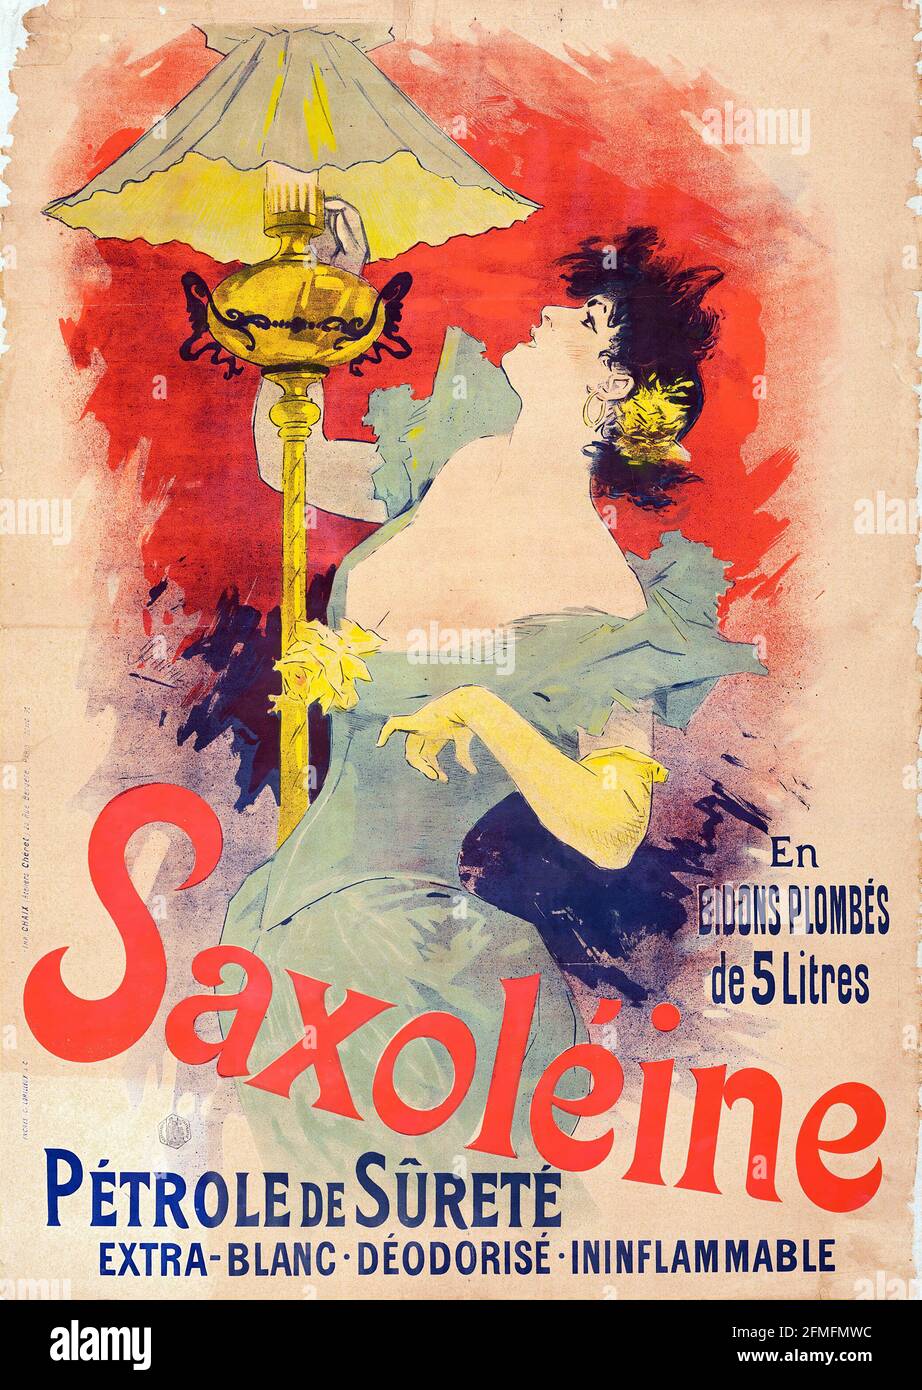 Jules Chéret - Saxoleine Petrole de sureté - 1890 - La belle époque poster Stock Photo